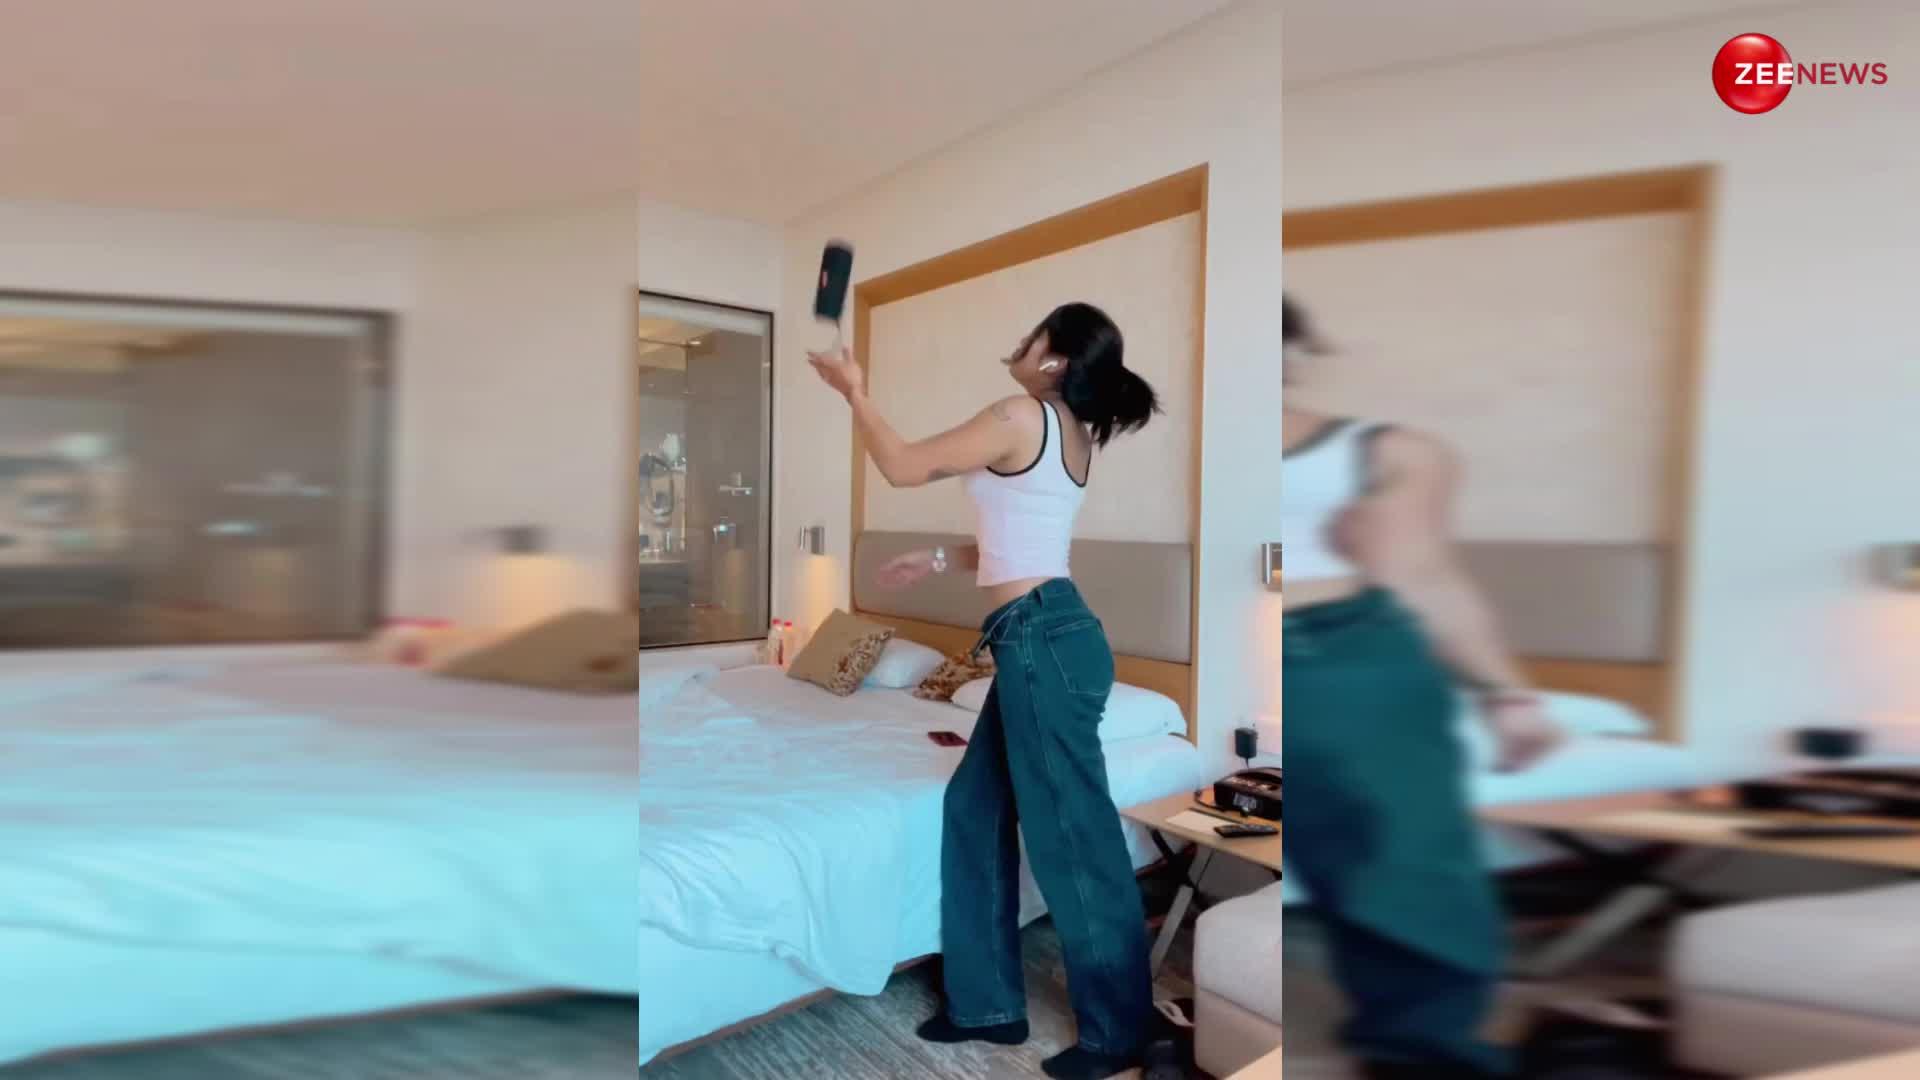 बैडरूम में पैंट खोल Sofia Ansari ने बना दिया अपना वीडियो, फिर की ऐसी हरकत; देख आंटी को करनी पड़ी अपनी आंखें बंद